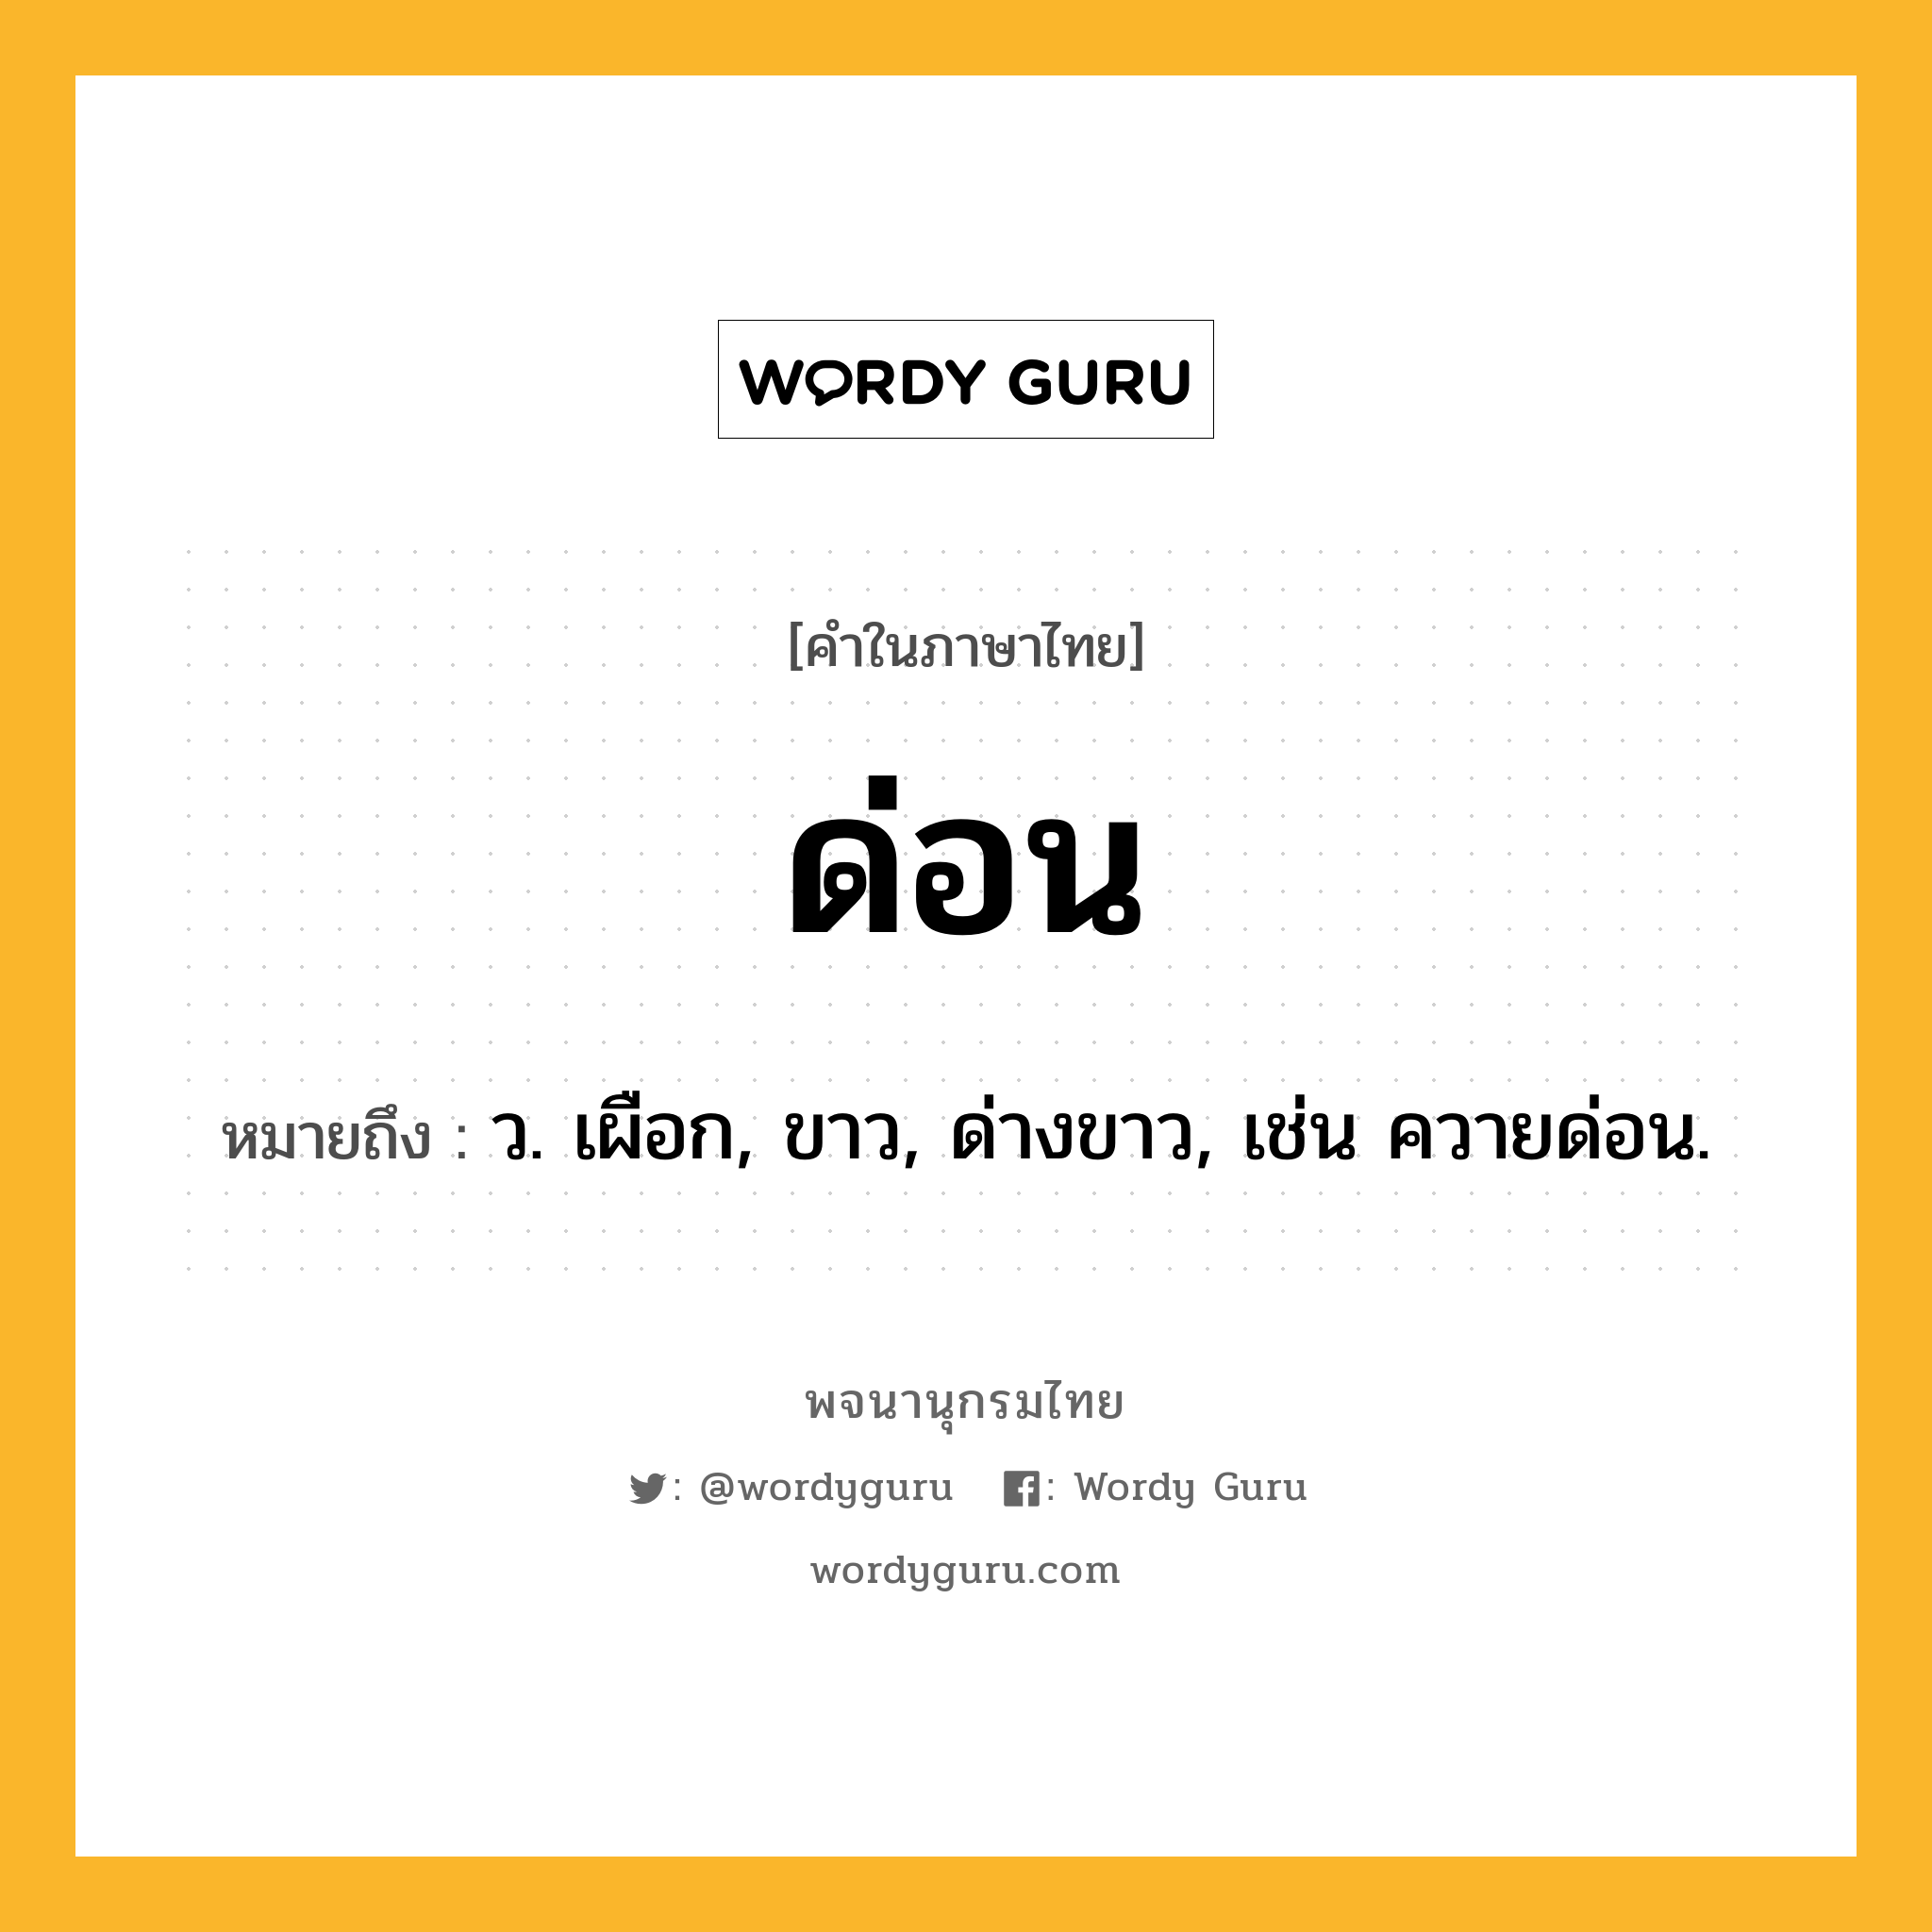 ด่อน ความหมาย หมายถึงอะไร?, คำในภาษาไทย ด่อน หมายถึง ว. เผือก, ขาว, ด่างขาว, เช่น ควายด่อน.